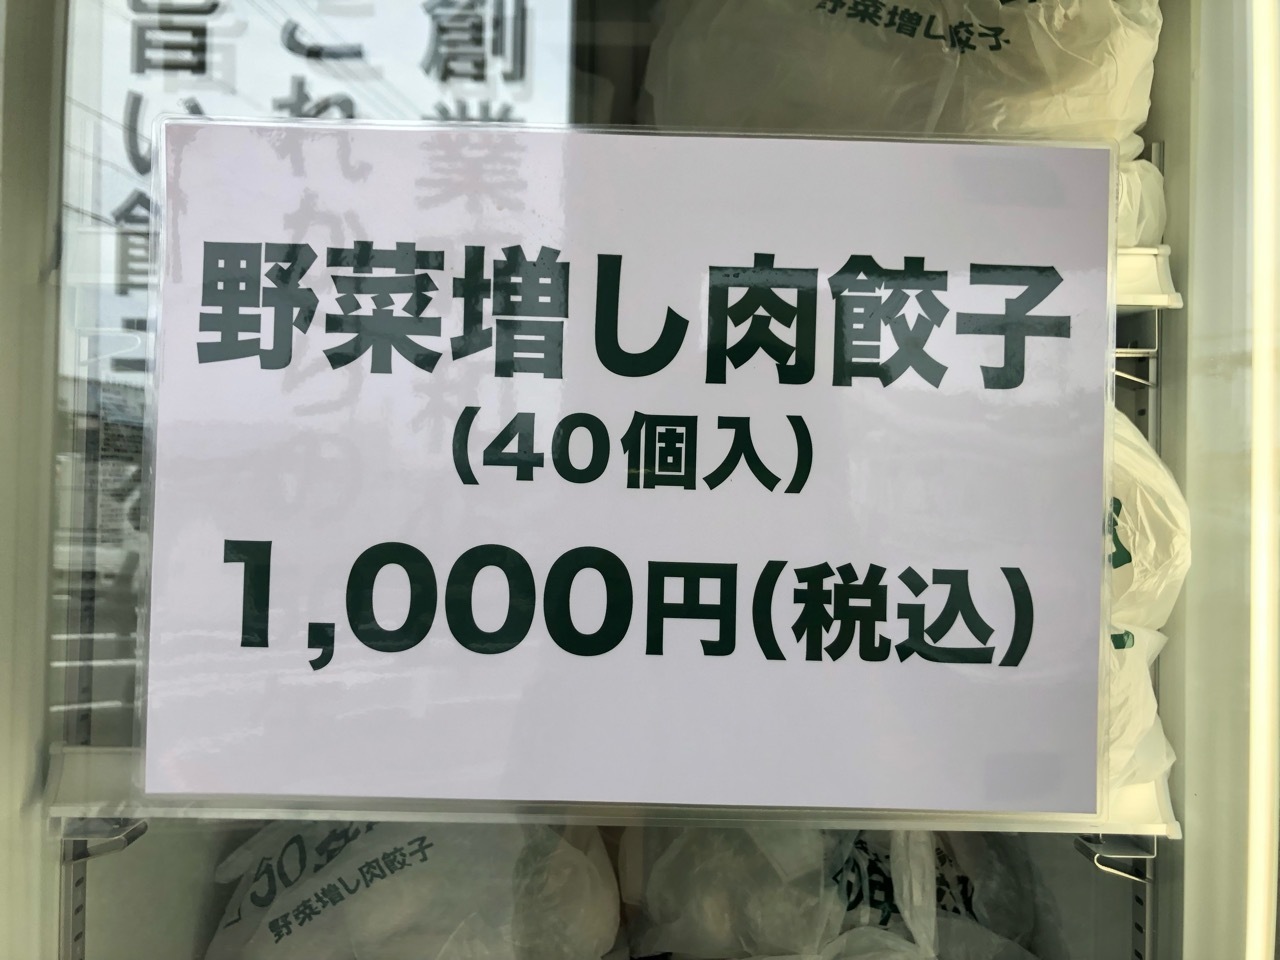 無人ギョーザ販売所「50年餃子」野菜増し肉餃子